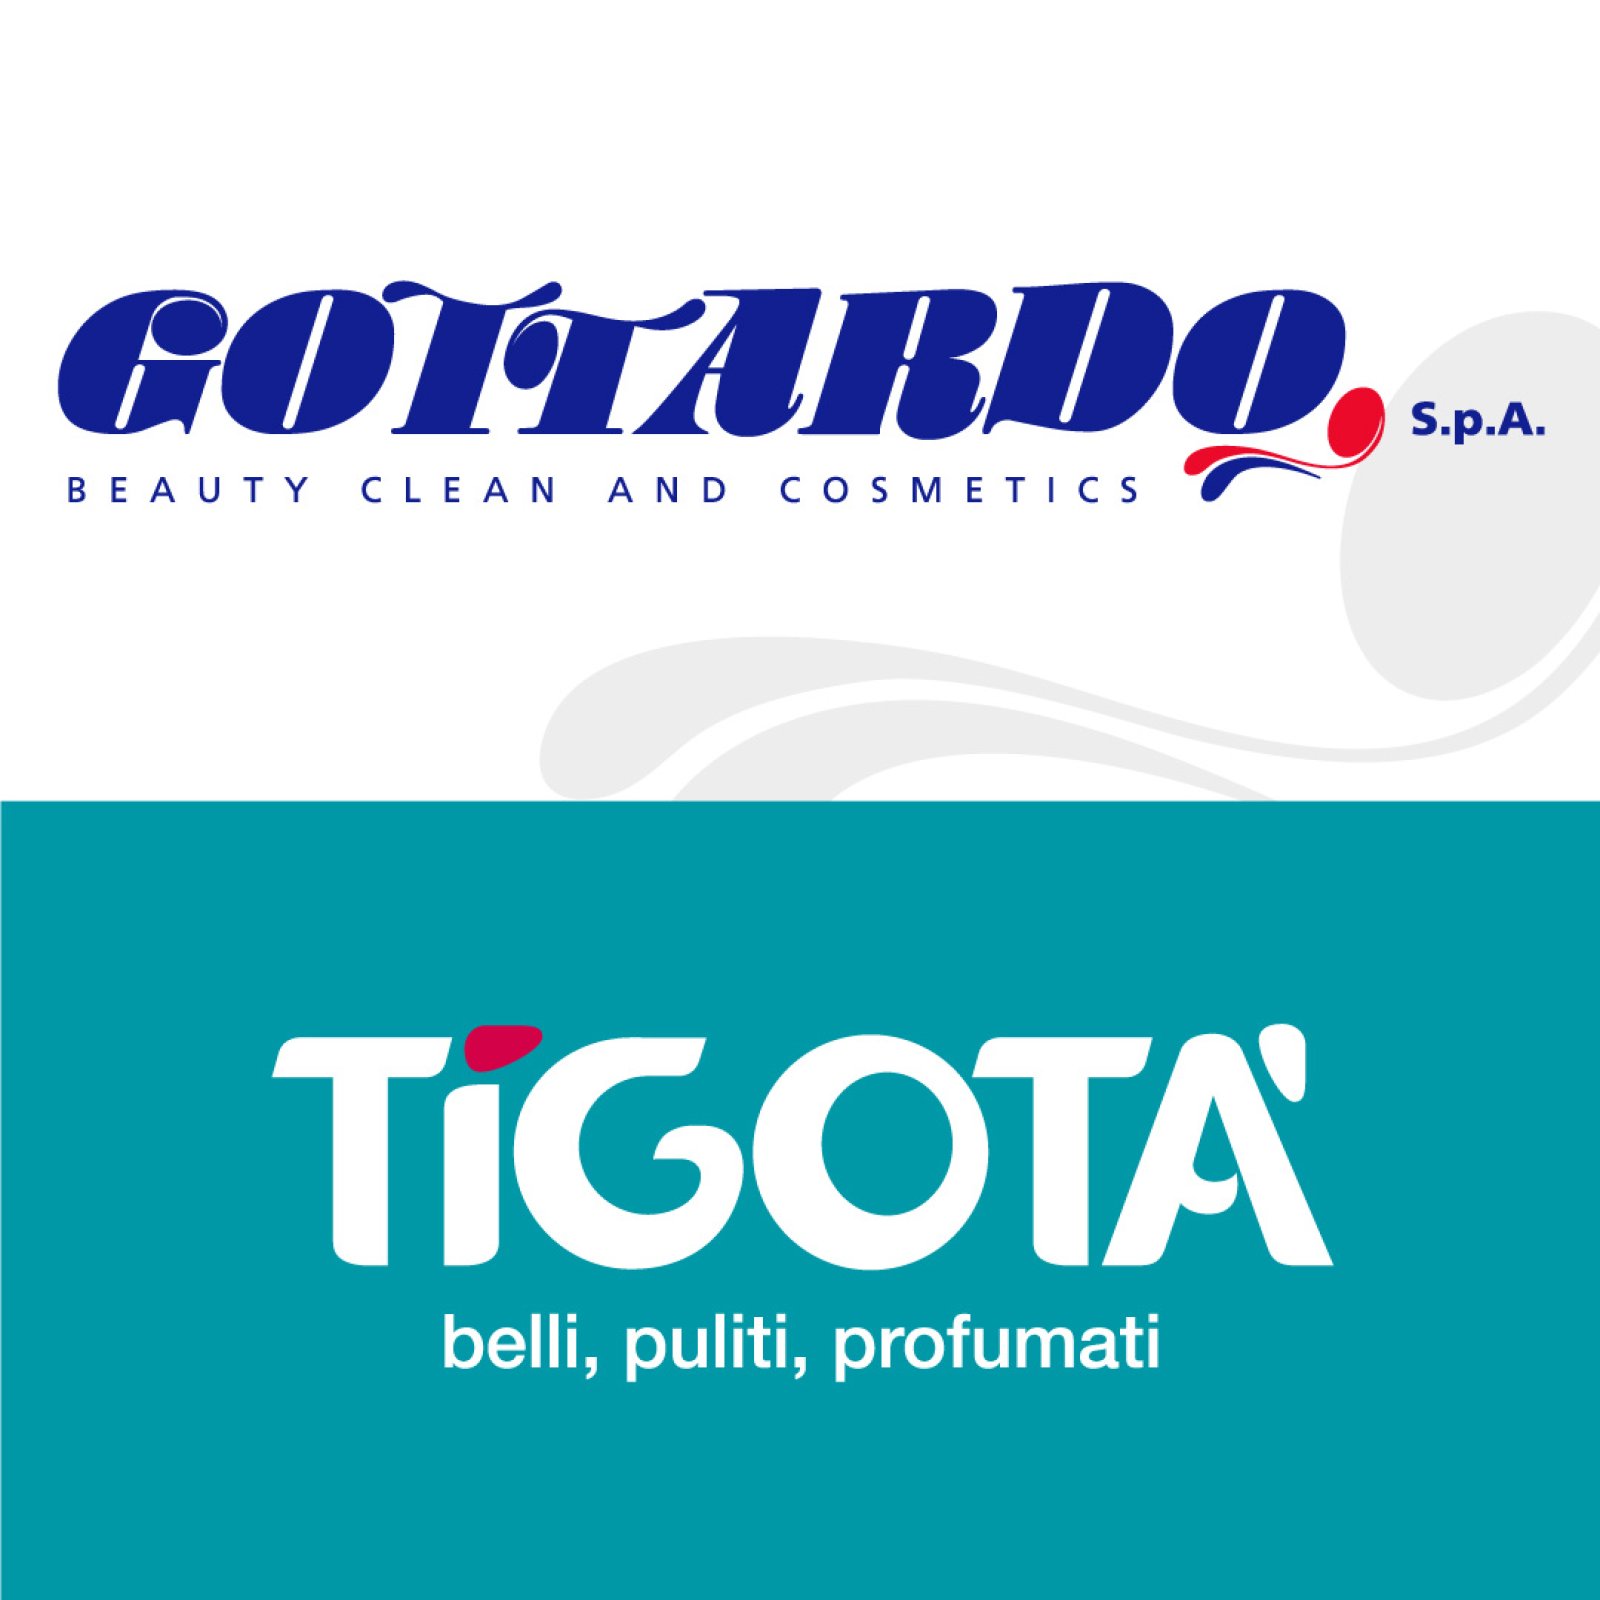 Logo Gottardo S.p.A. - brand Tigotà